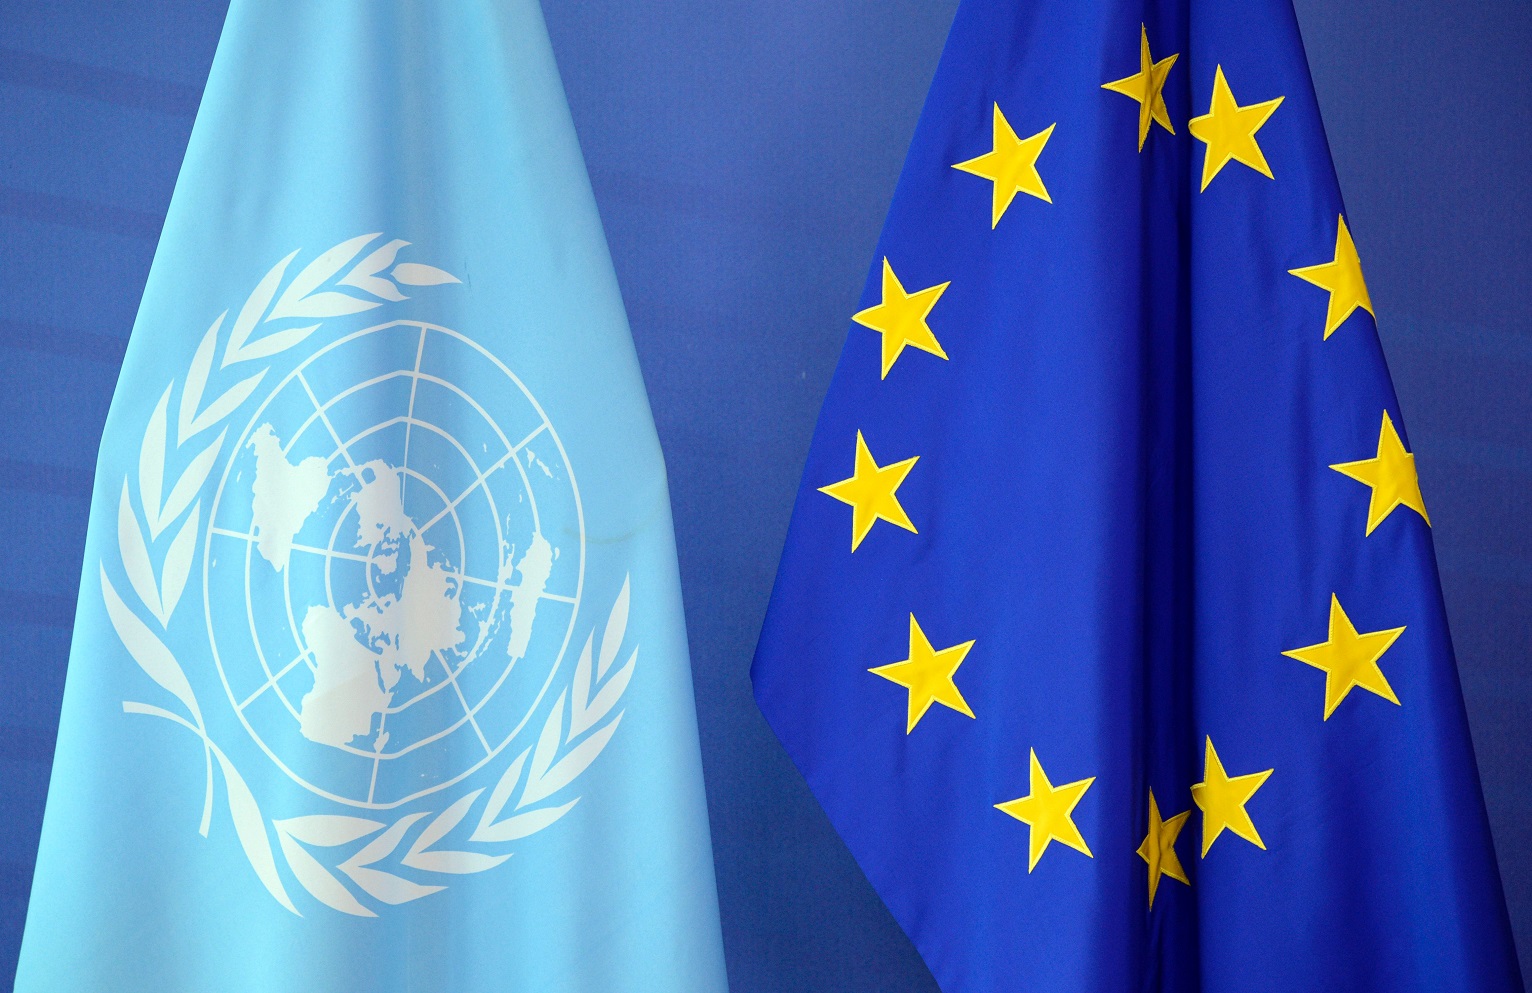 ONU-și-UE-unite-în-condamnarea-alegerilor-prezidențiale-ruse-pe-teritoriul-ocupat-în-2014